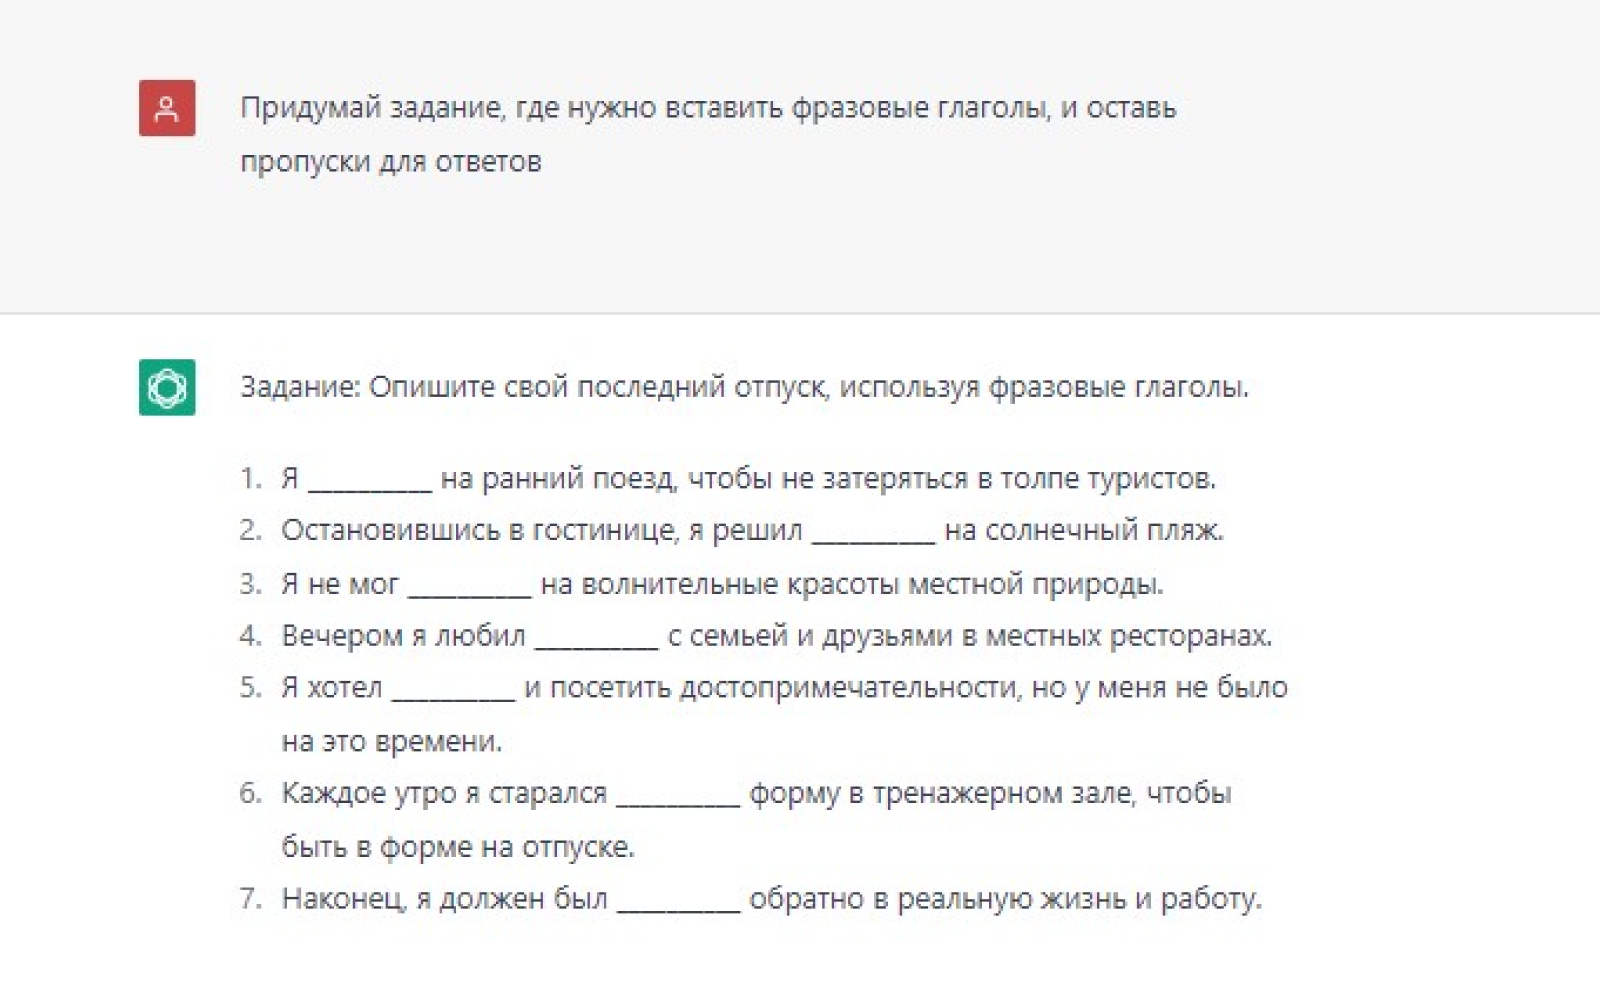 Нейросеть составила упражнение на русском языке, хотя я ждала задание на английском